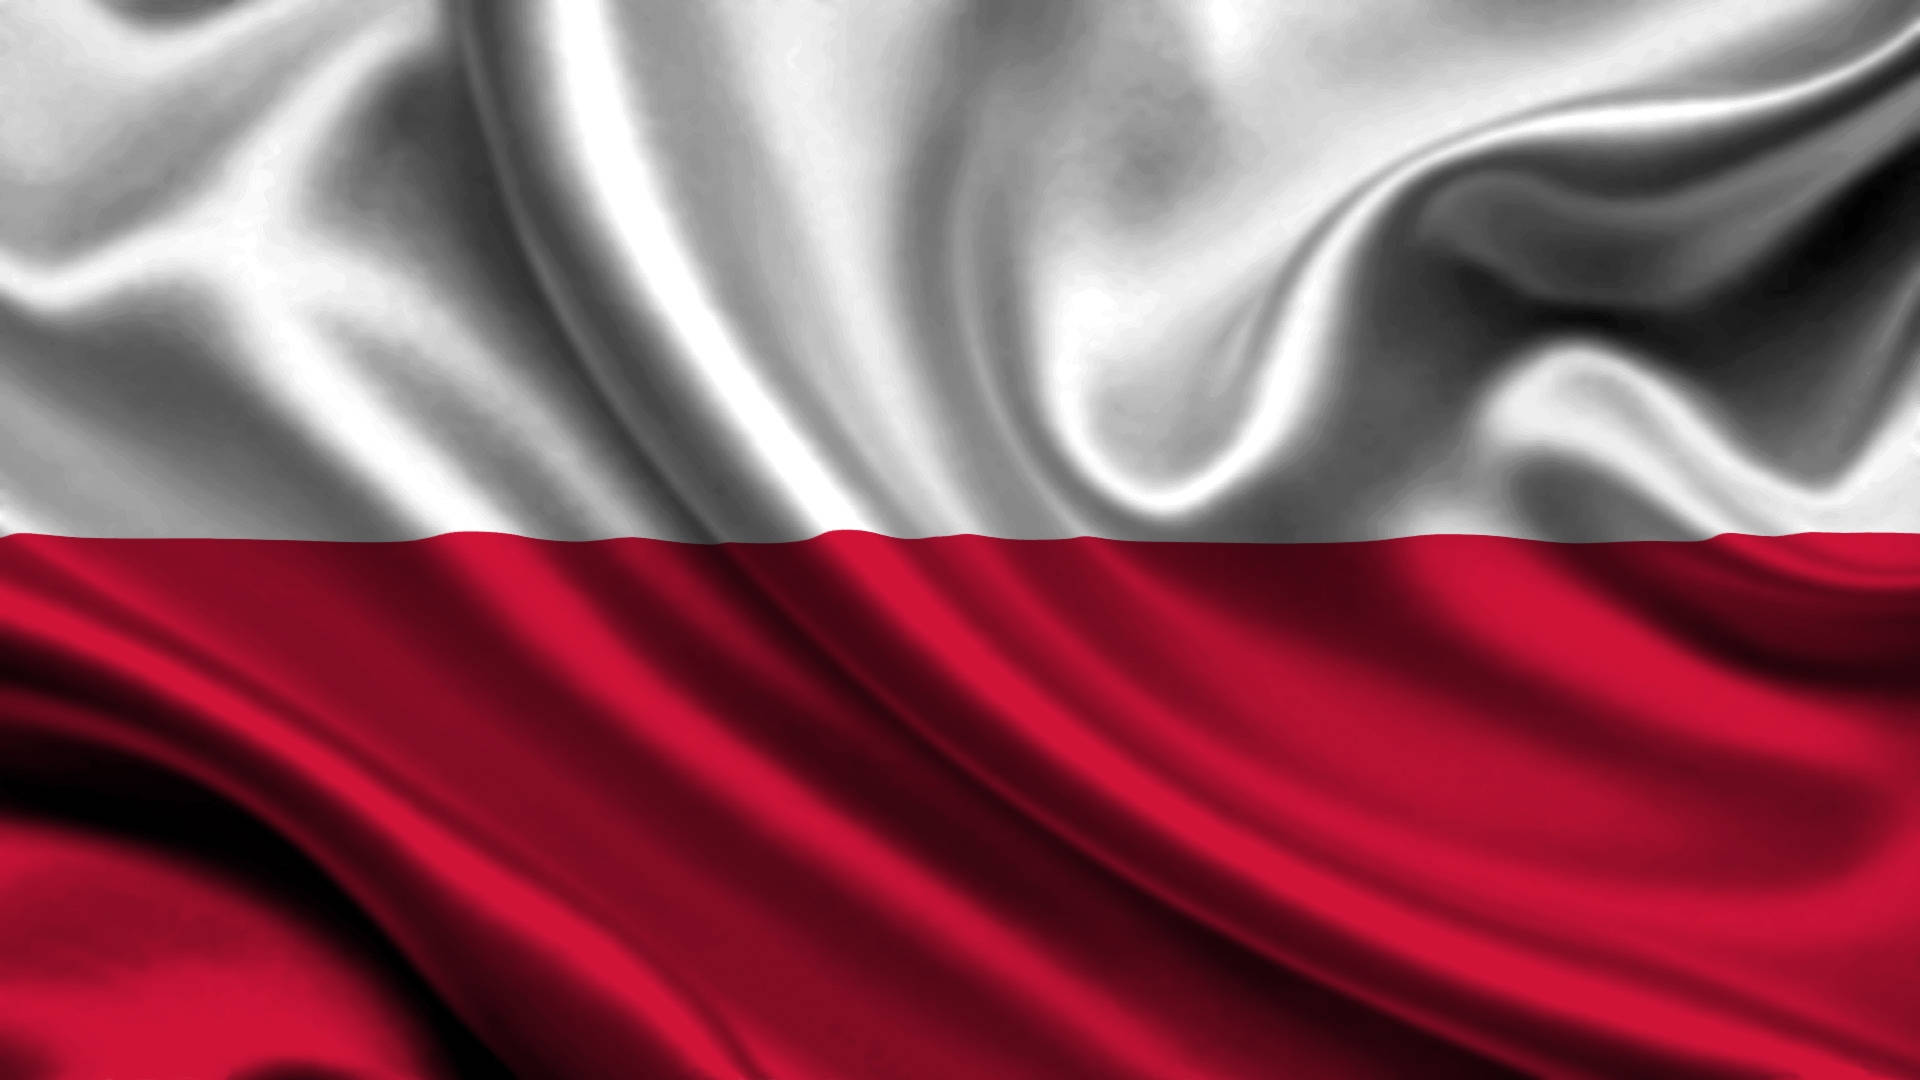 Banderade Polonia Arrugada Fondo de pantalla